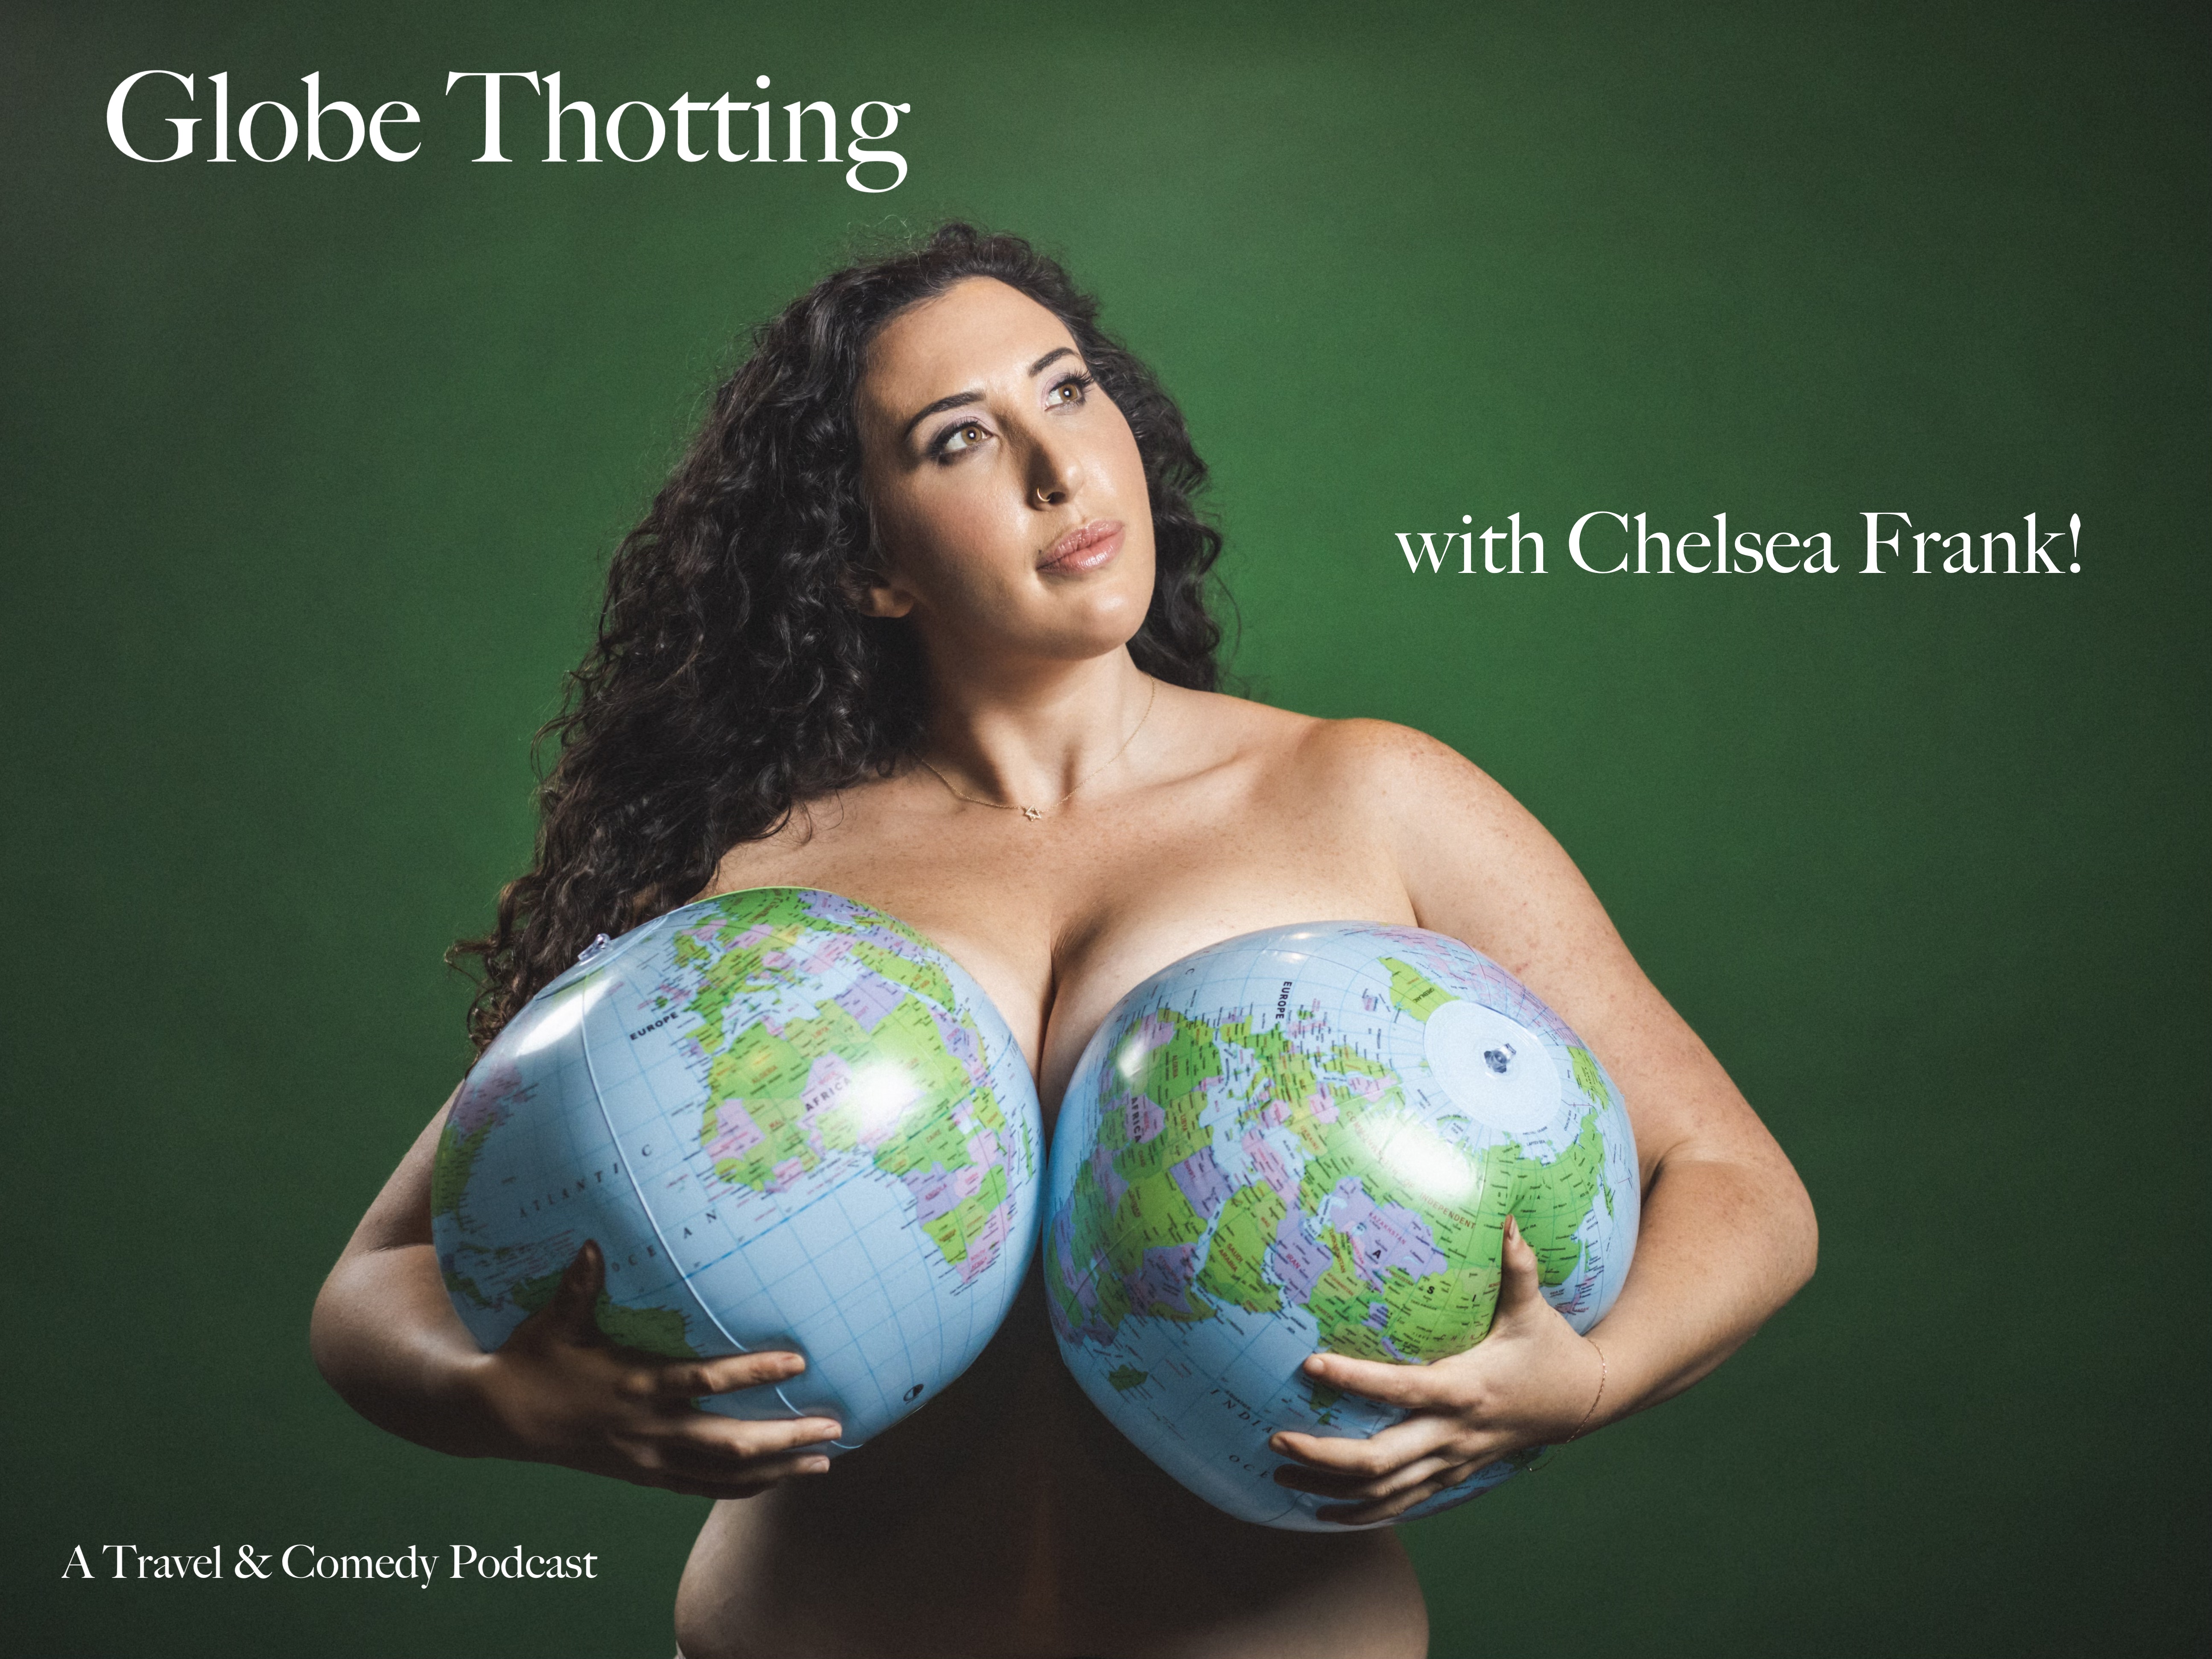 Globe Thotting Podcast